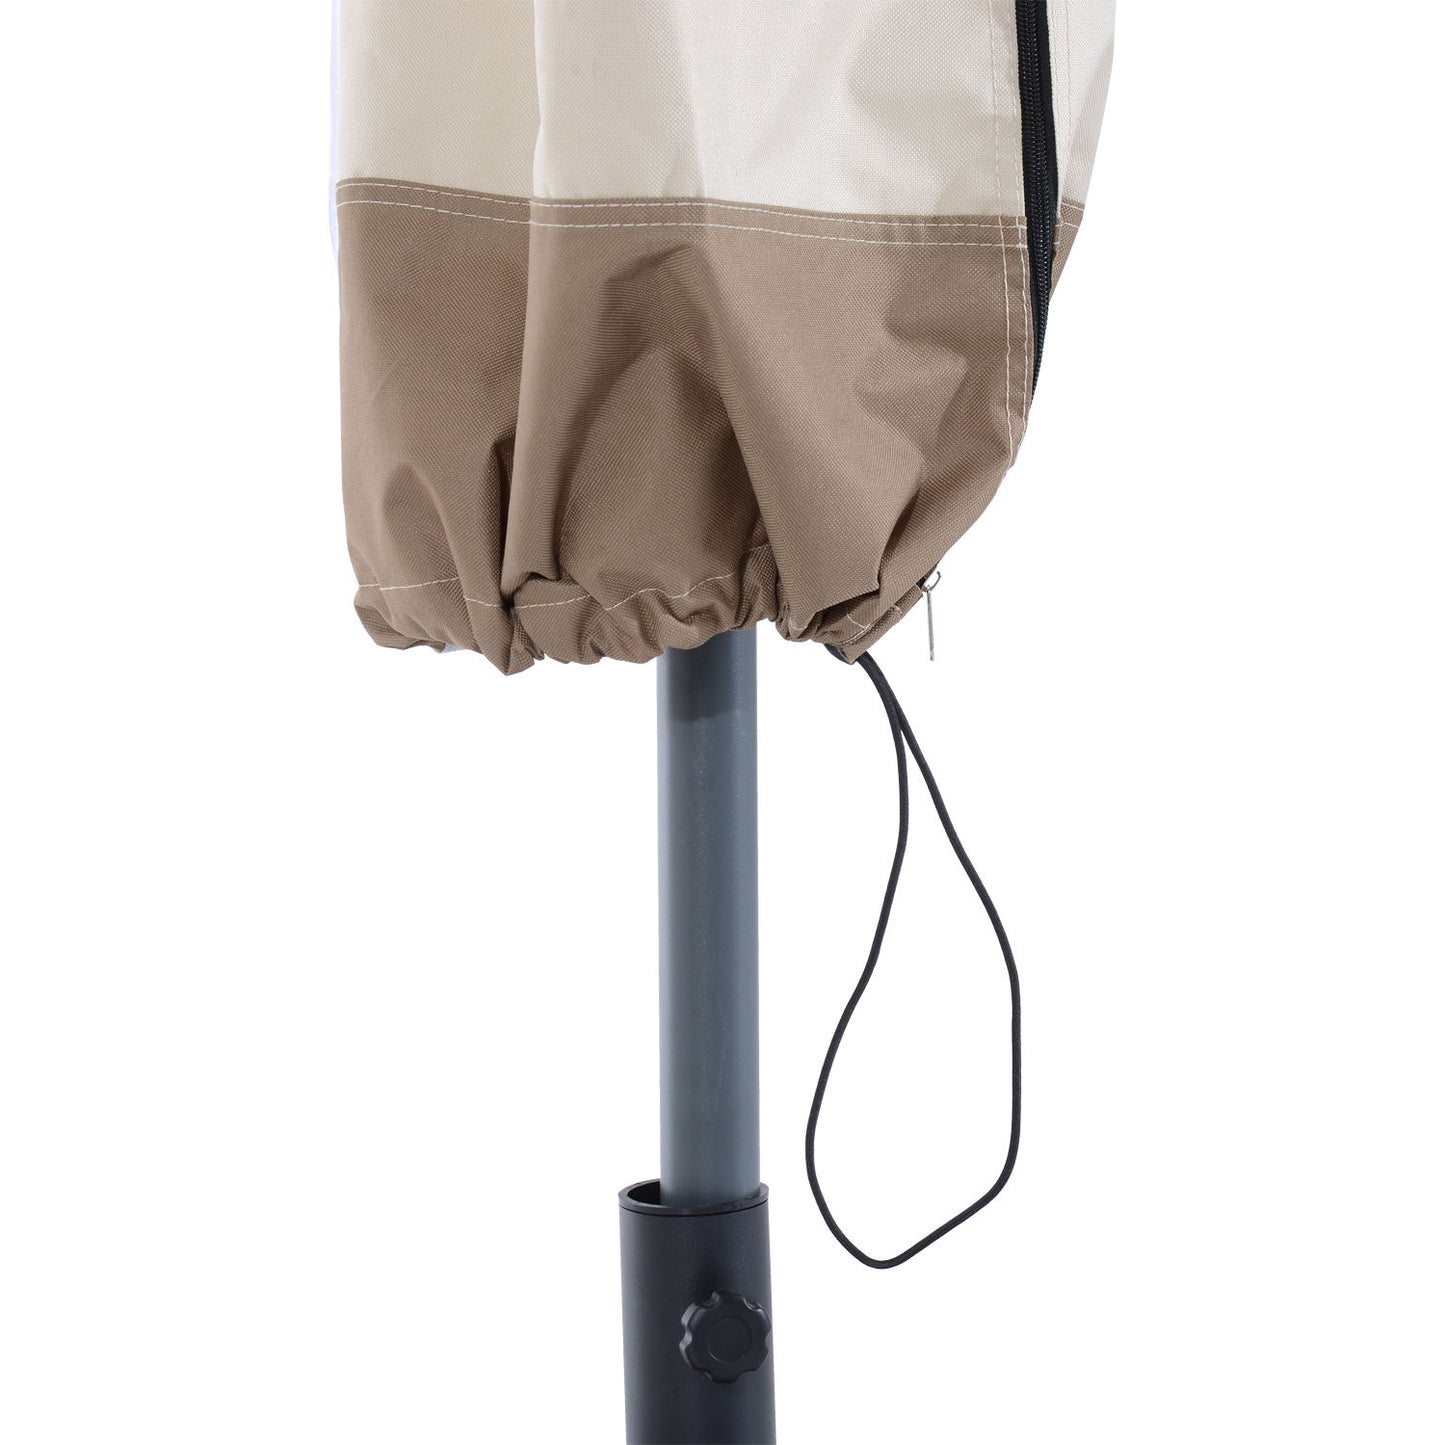 Housse de protection Nancy's Arlington pour parasol - Crème, Marron - Tissu - Ø 50 cm